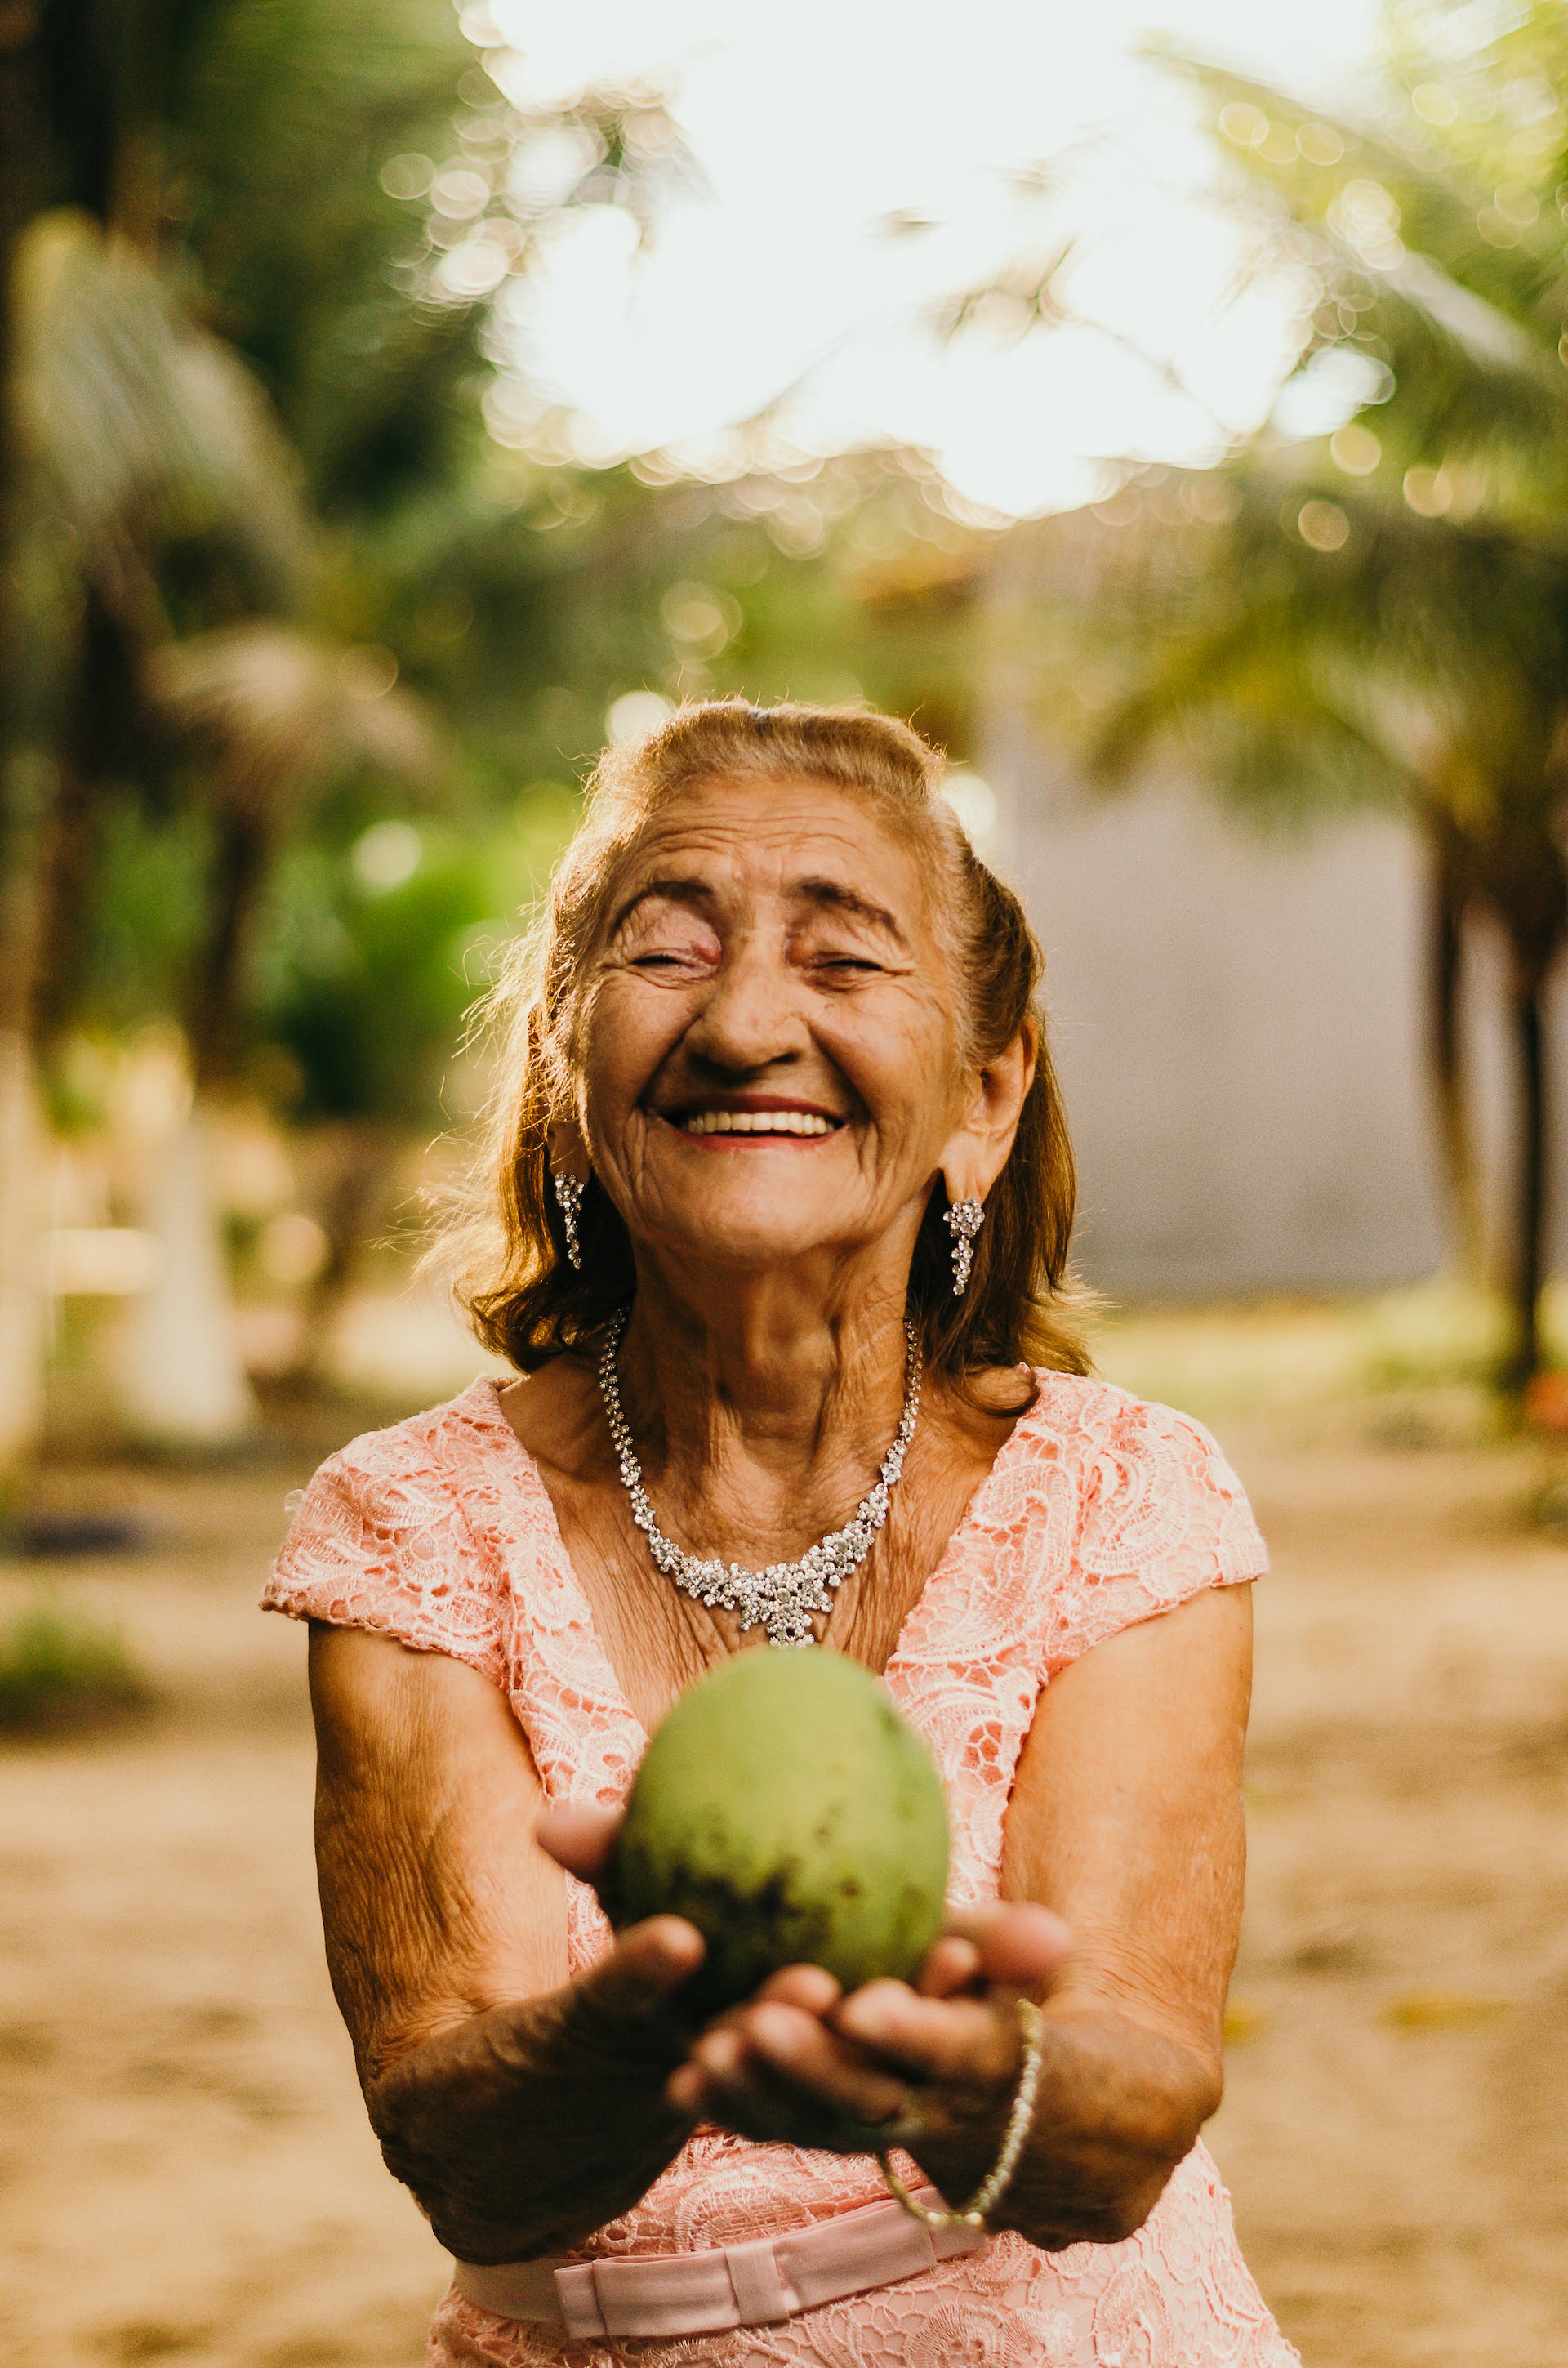 Vieille femme souriant et tenant une noix de coco | Source : Pexels